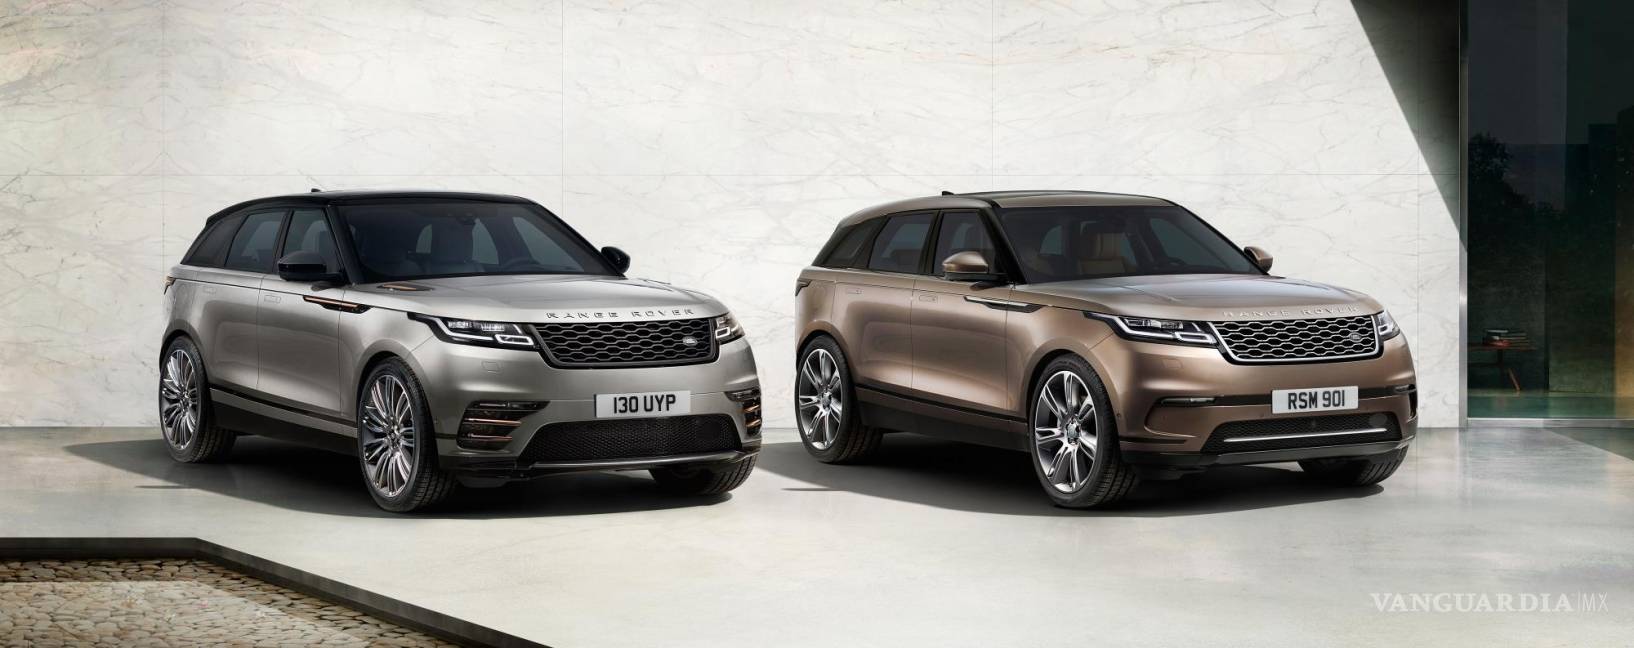 $!Anuncia Land Rover el lanzamiento de su nueva SUV, Velar